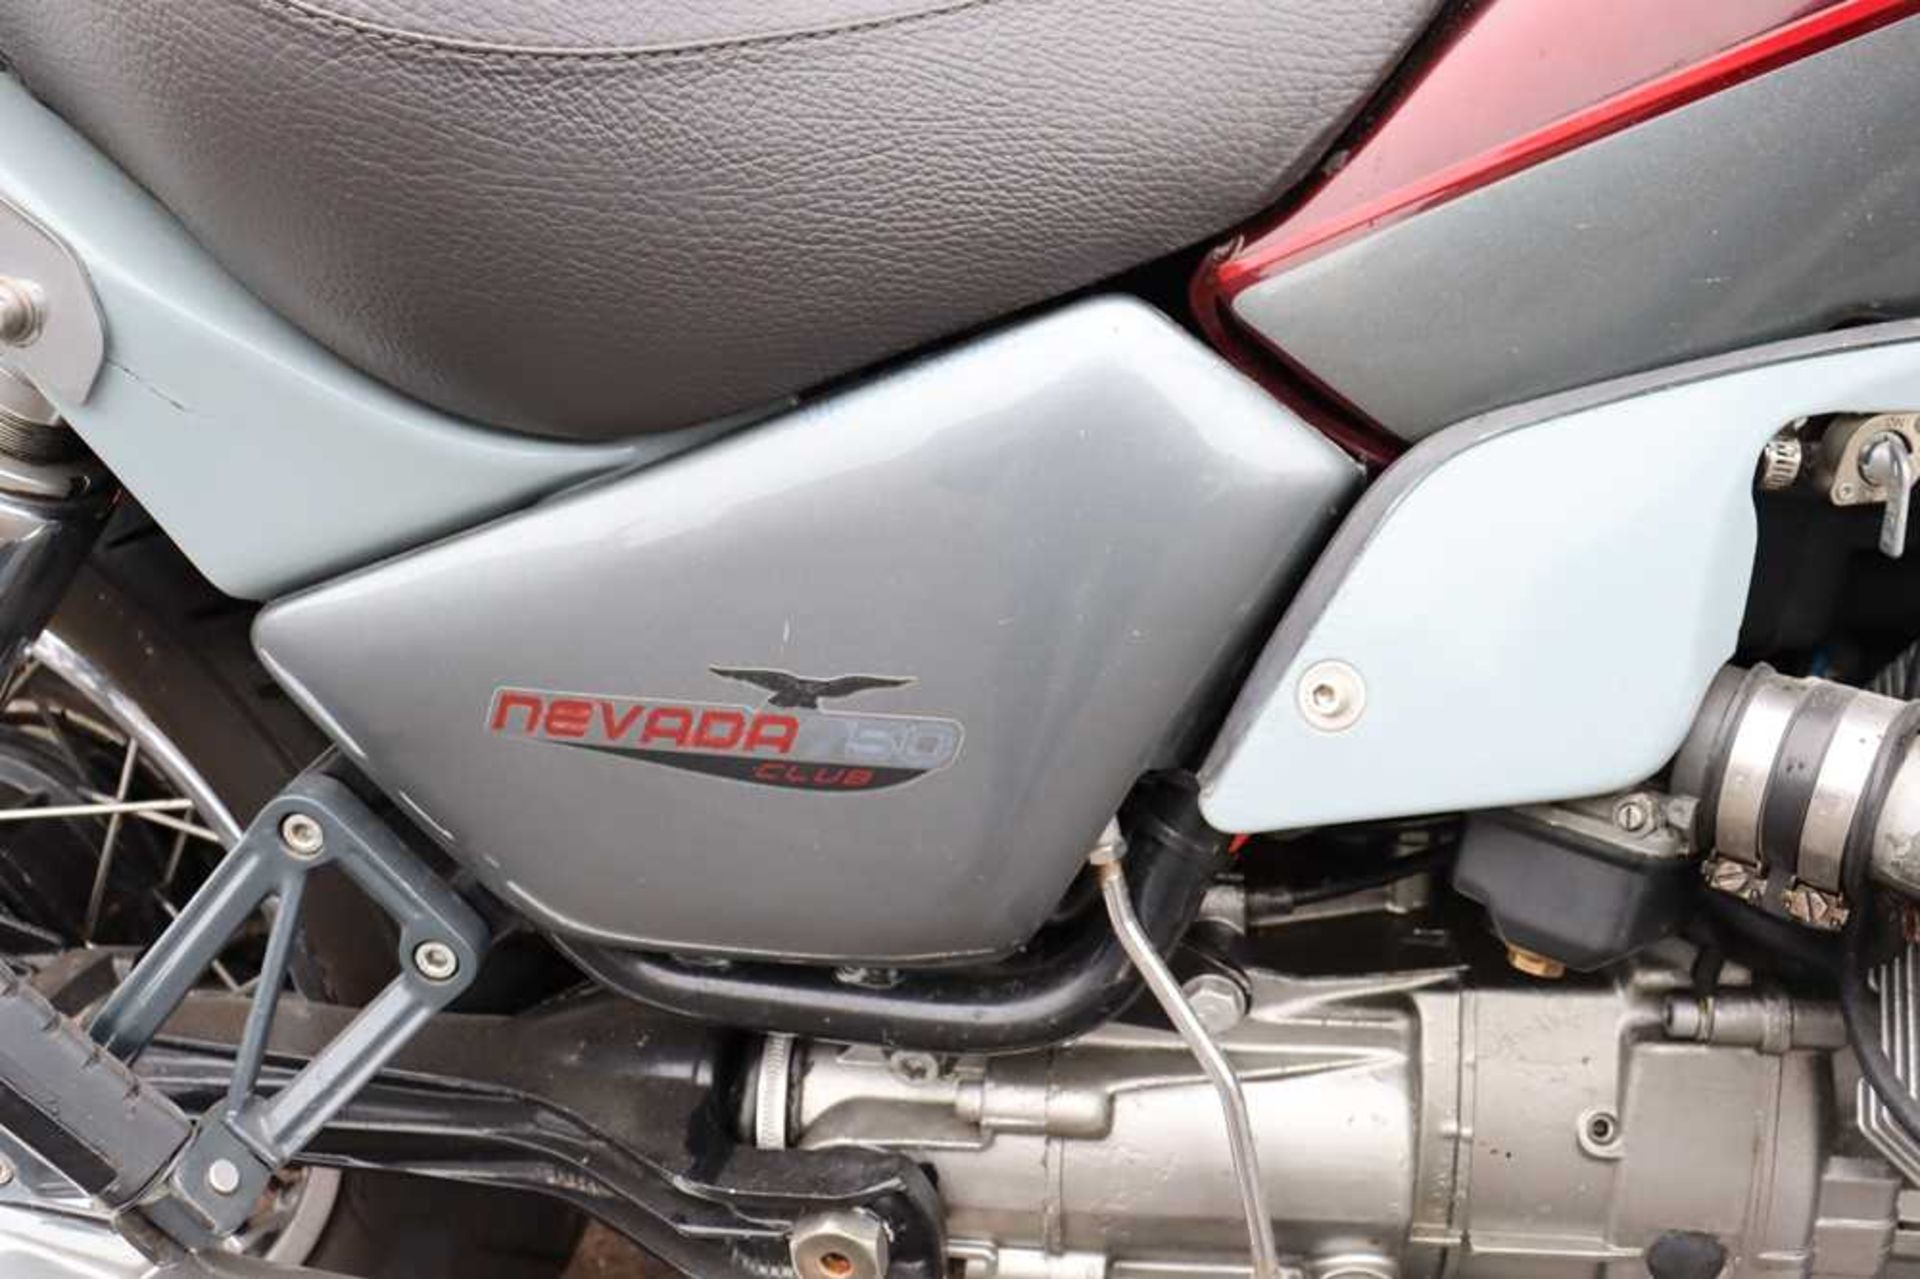 2004 Moto Guzzi Nevada Custom model with backrest and engine bars - Image 12 of 42